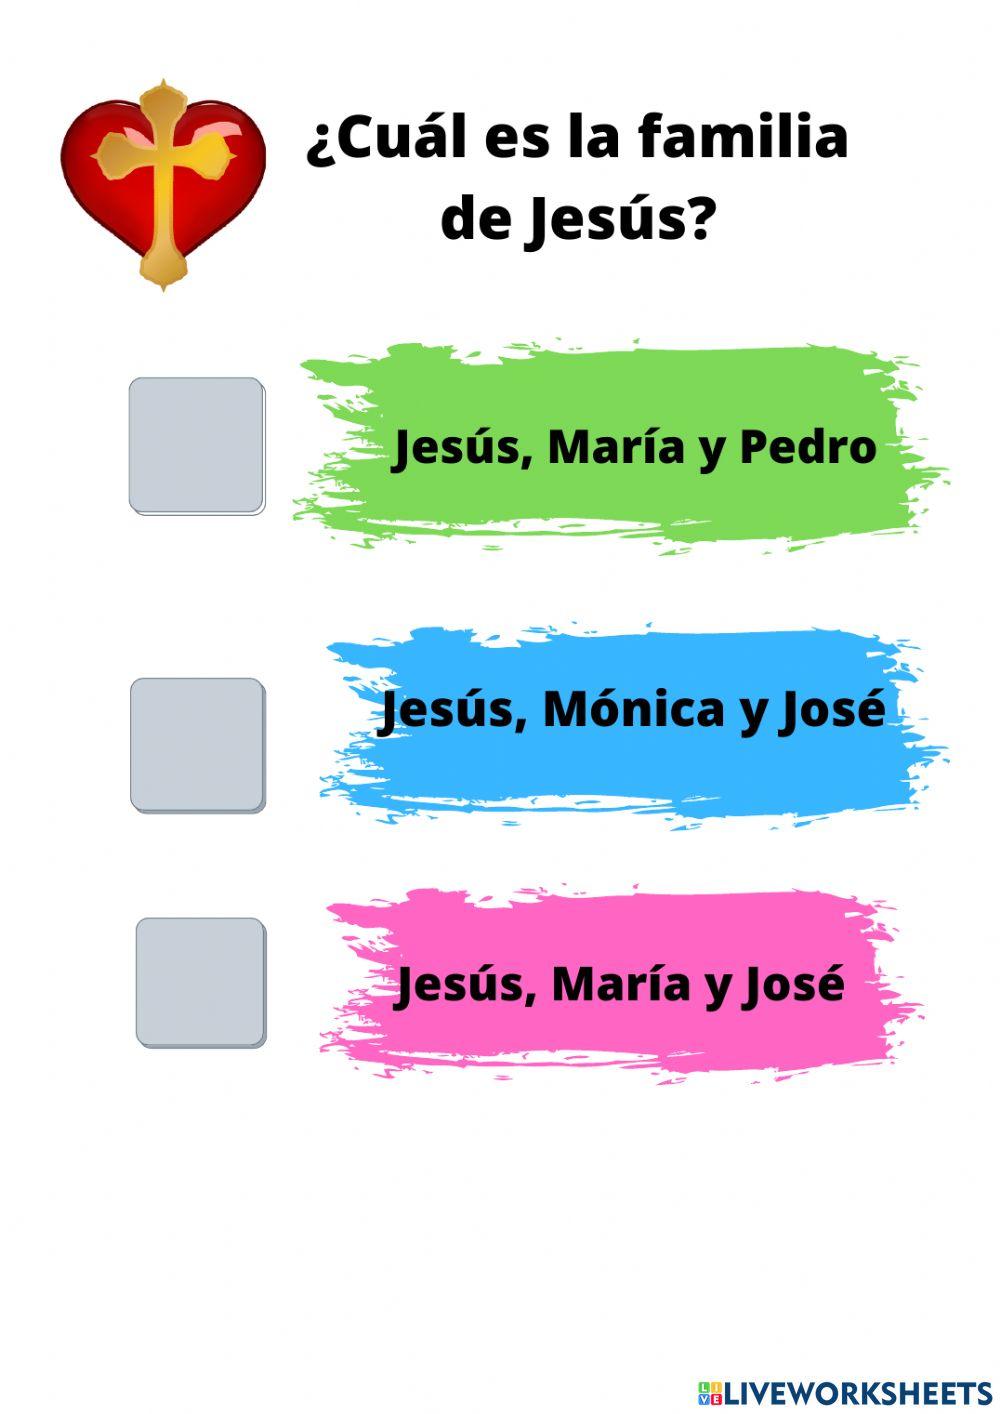 La familia de Jesús